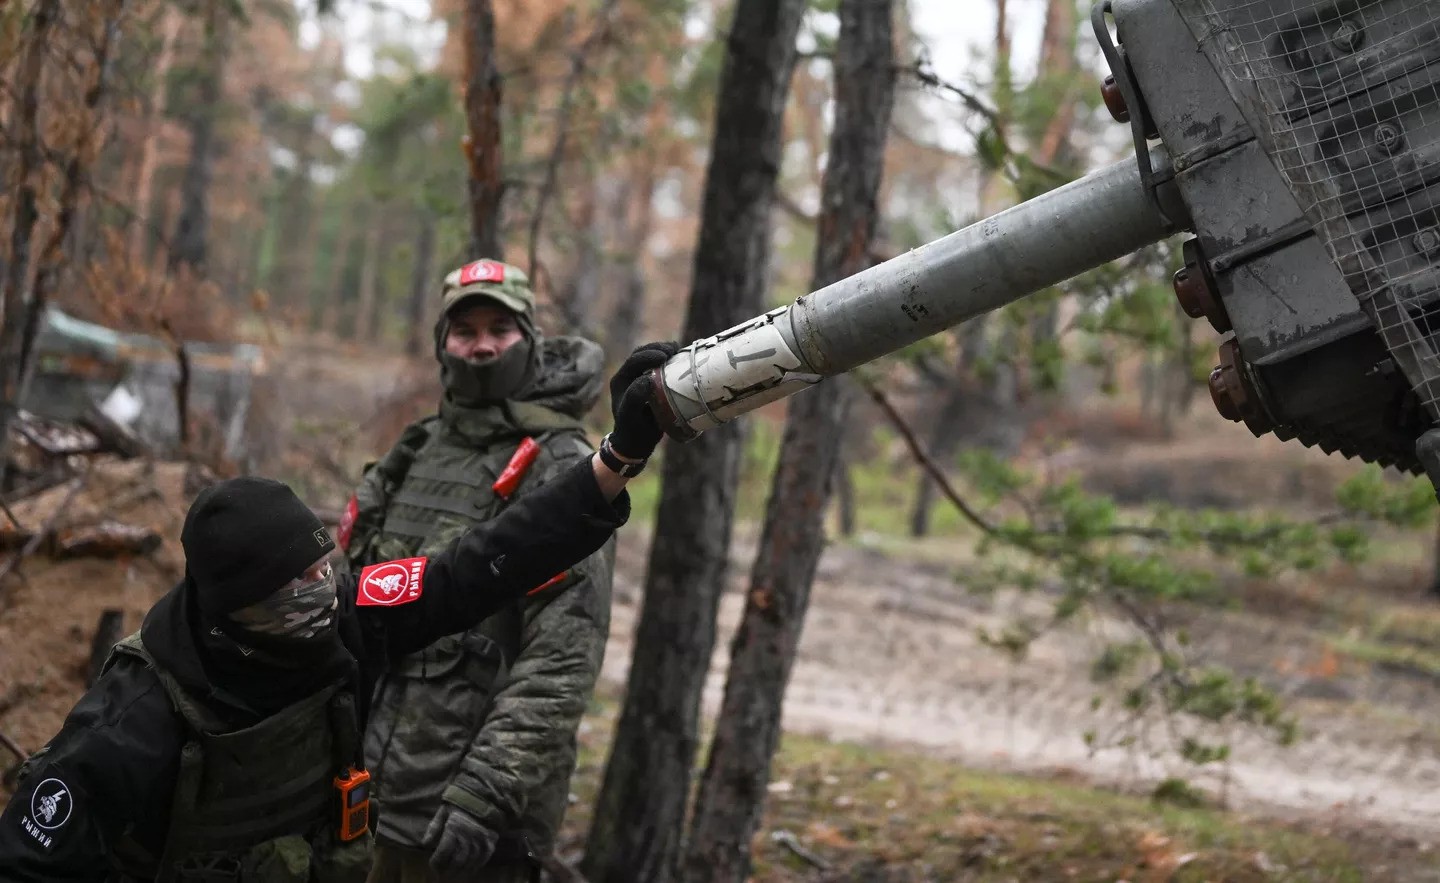 طاقم غراد من قوات المنطقة العسكرية الوسطى يطلقون النار على مواقع القوات المسلحة الأوكرانية في اتجاه كراسني ليمان في العملية العسكرية الخاصة (سبوتنيك)